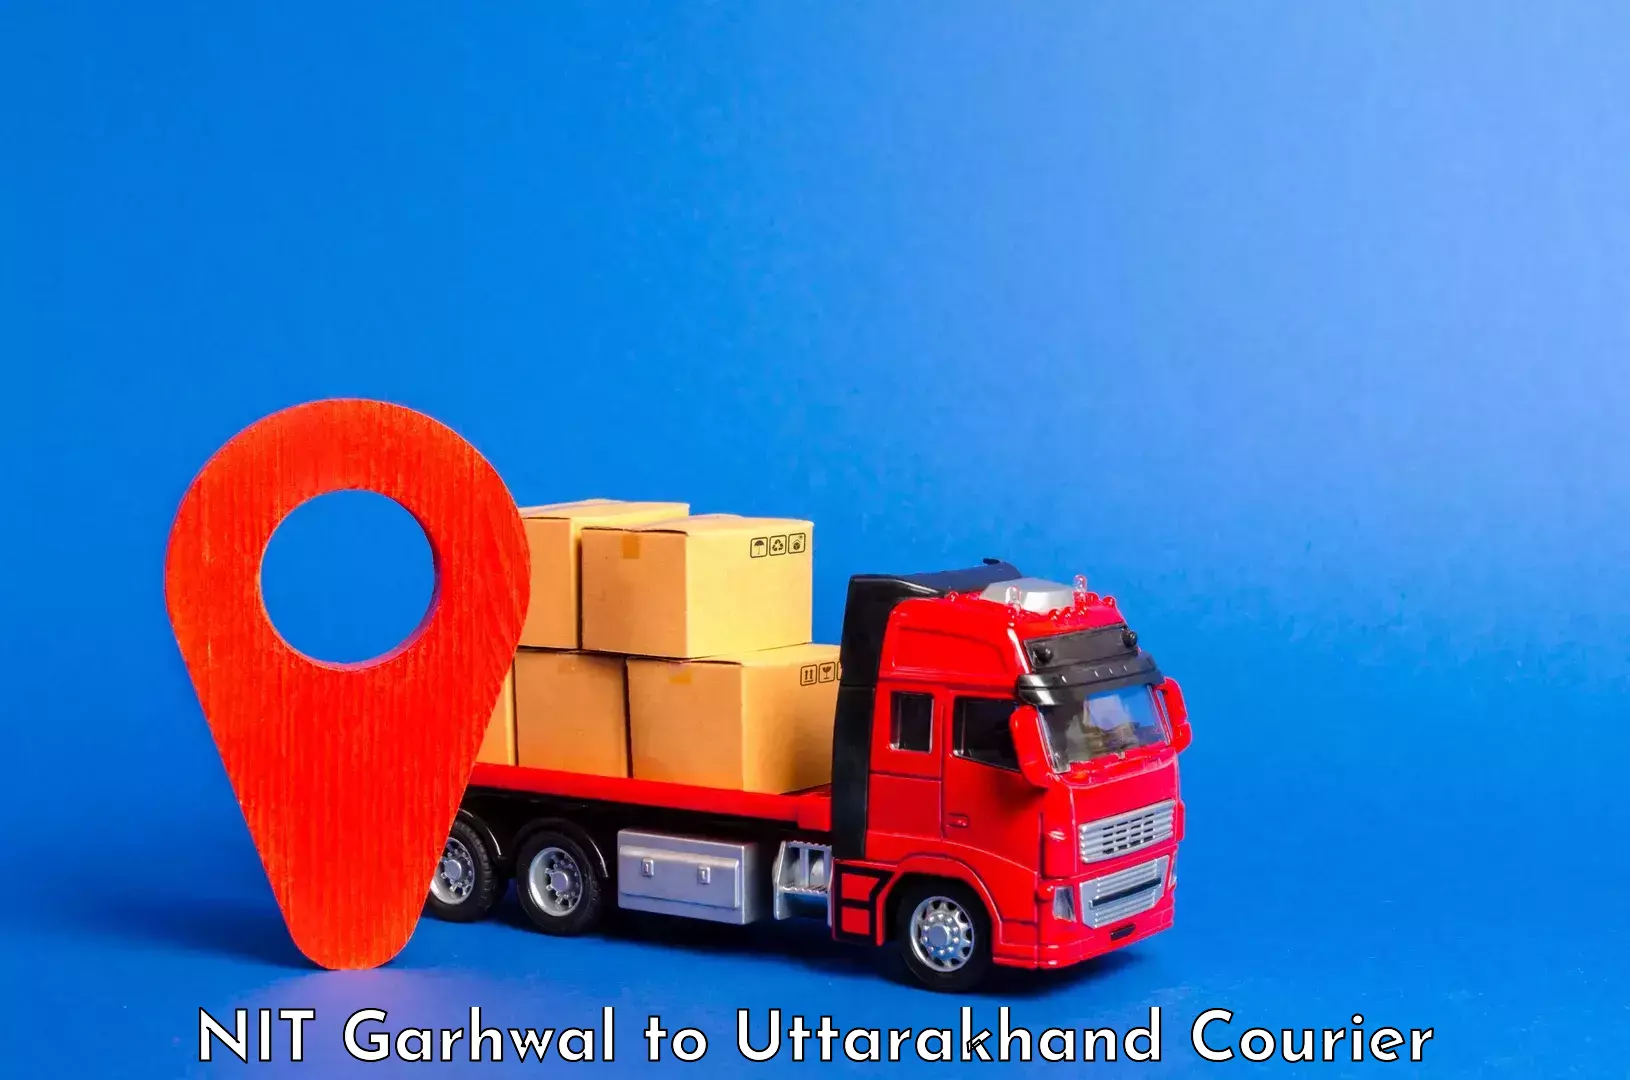 Luggage transport company NIT Garhwal to Uttarakhand